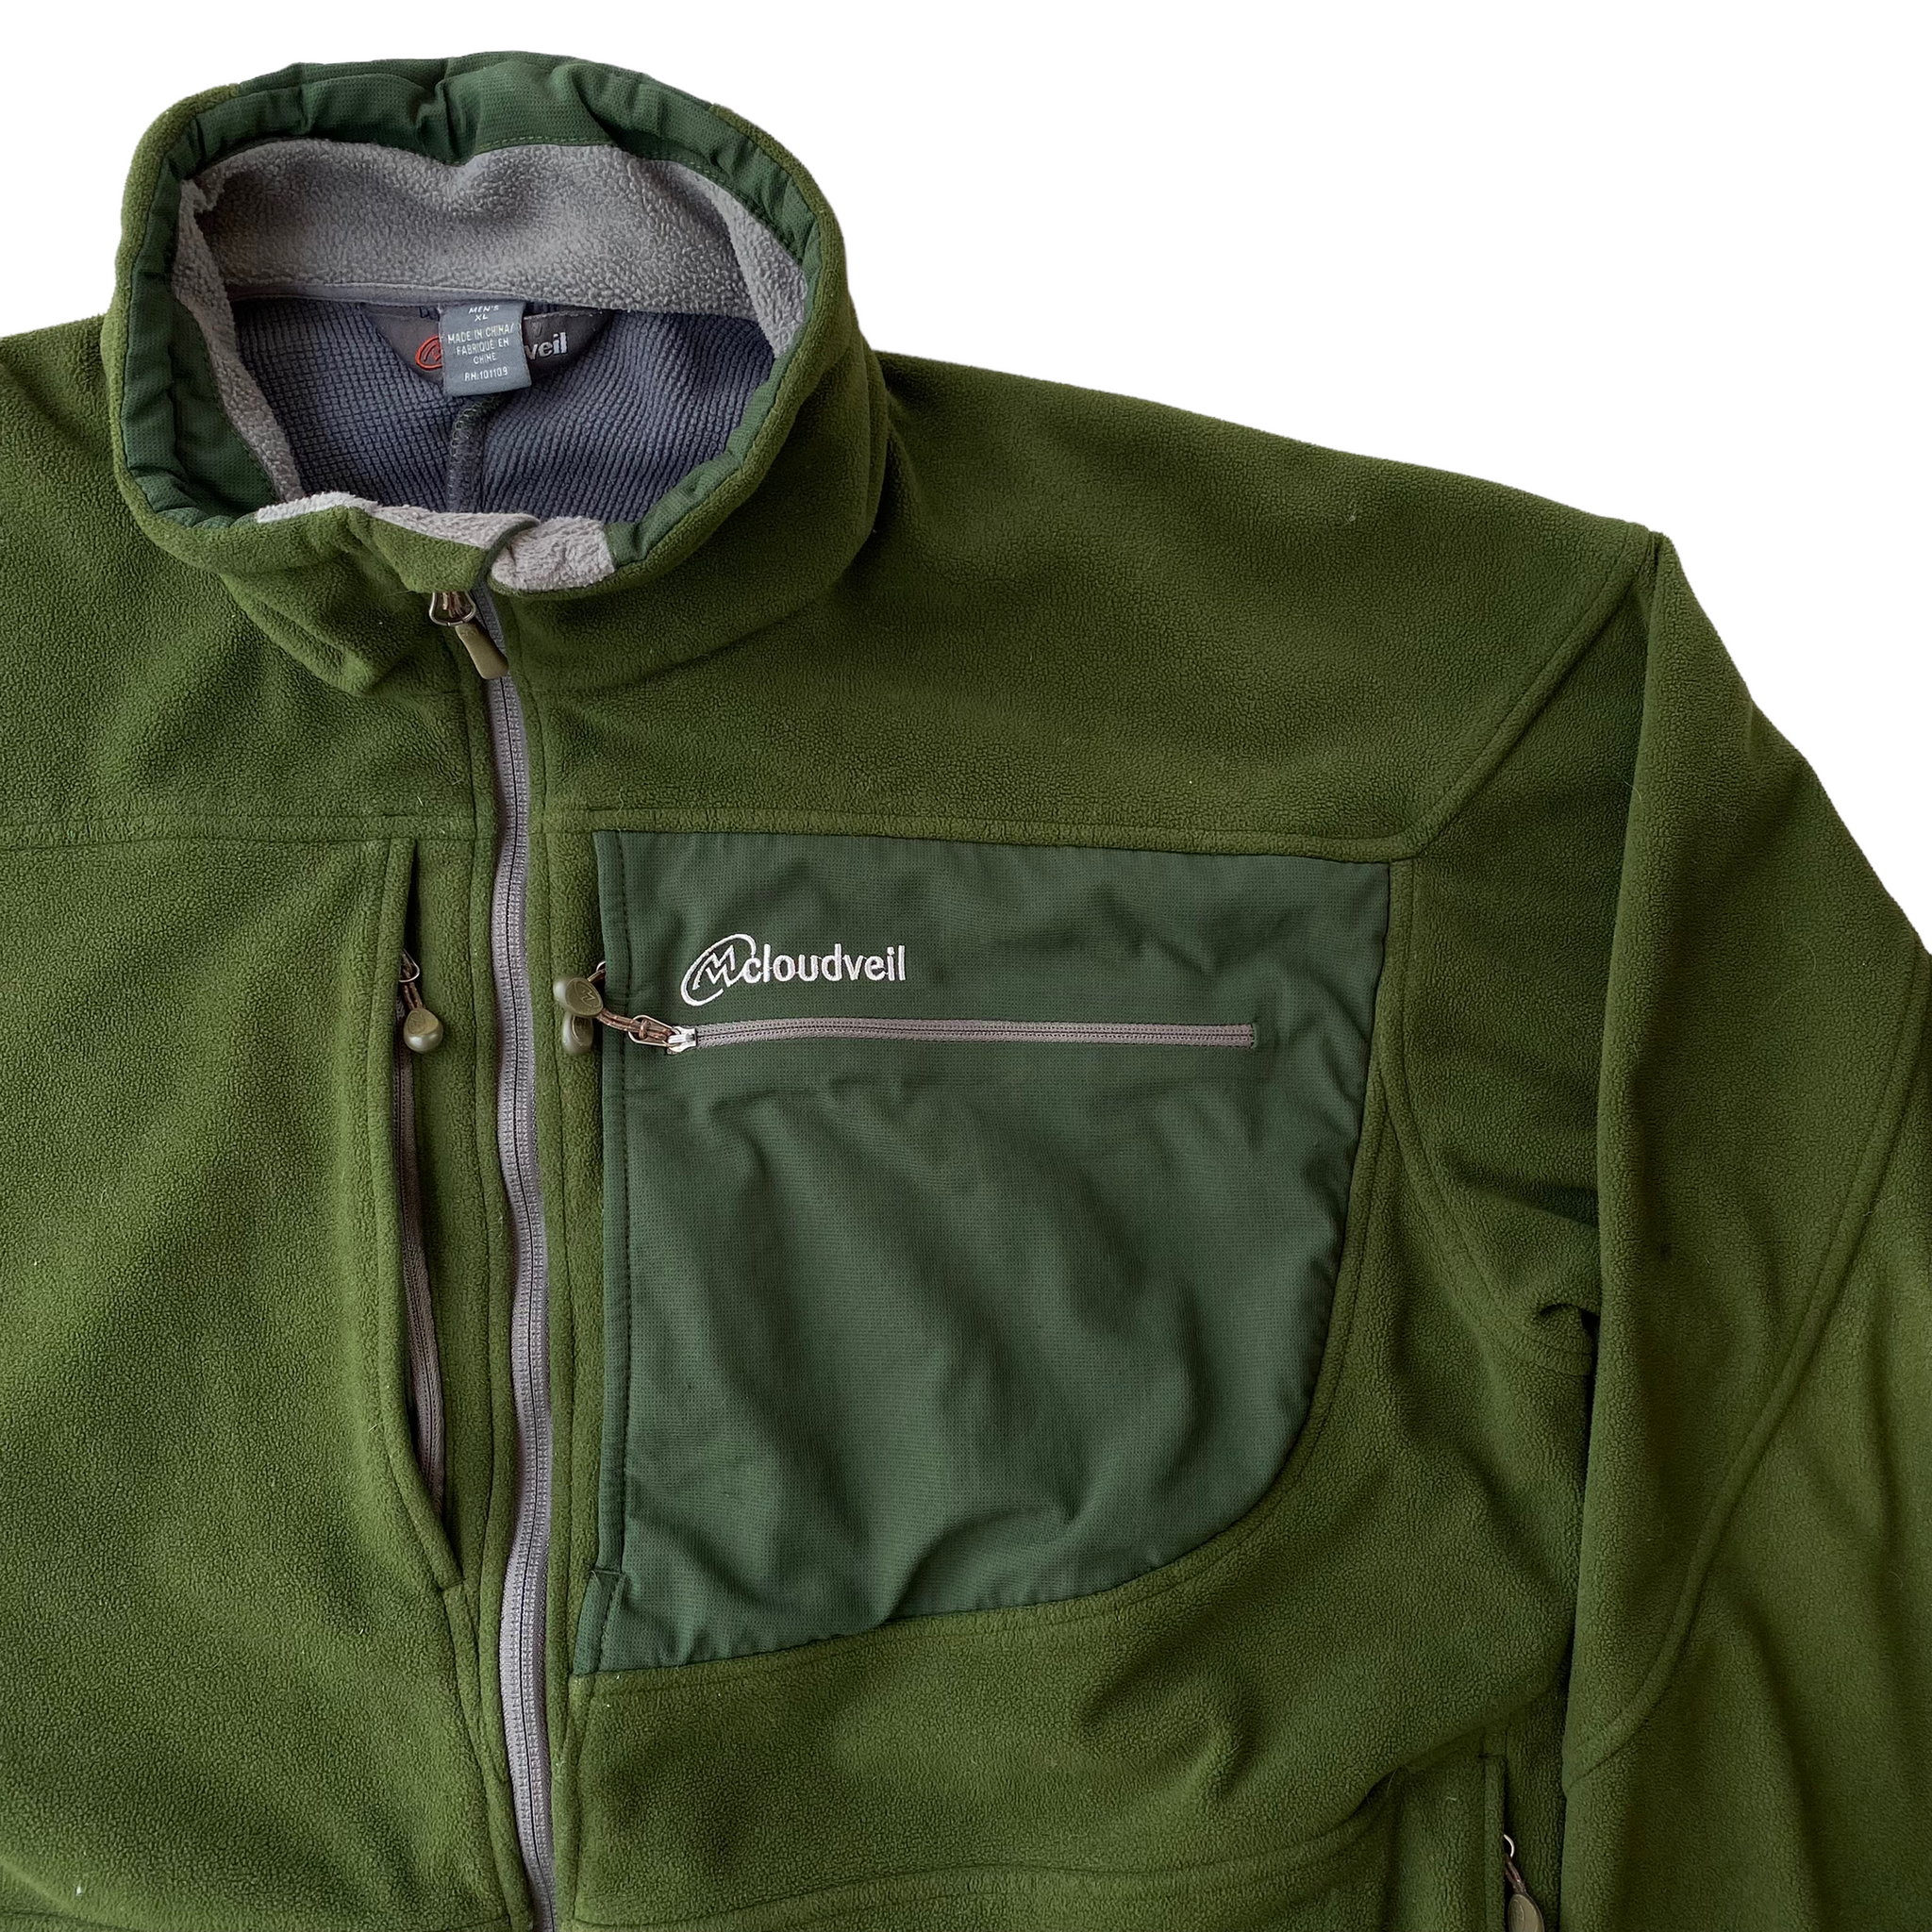 Cloudveil fleece jacket. zip pockets. XL